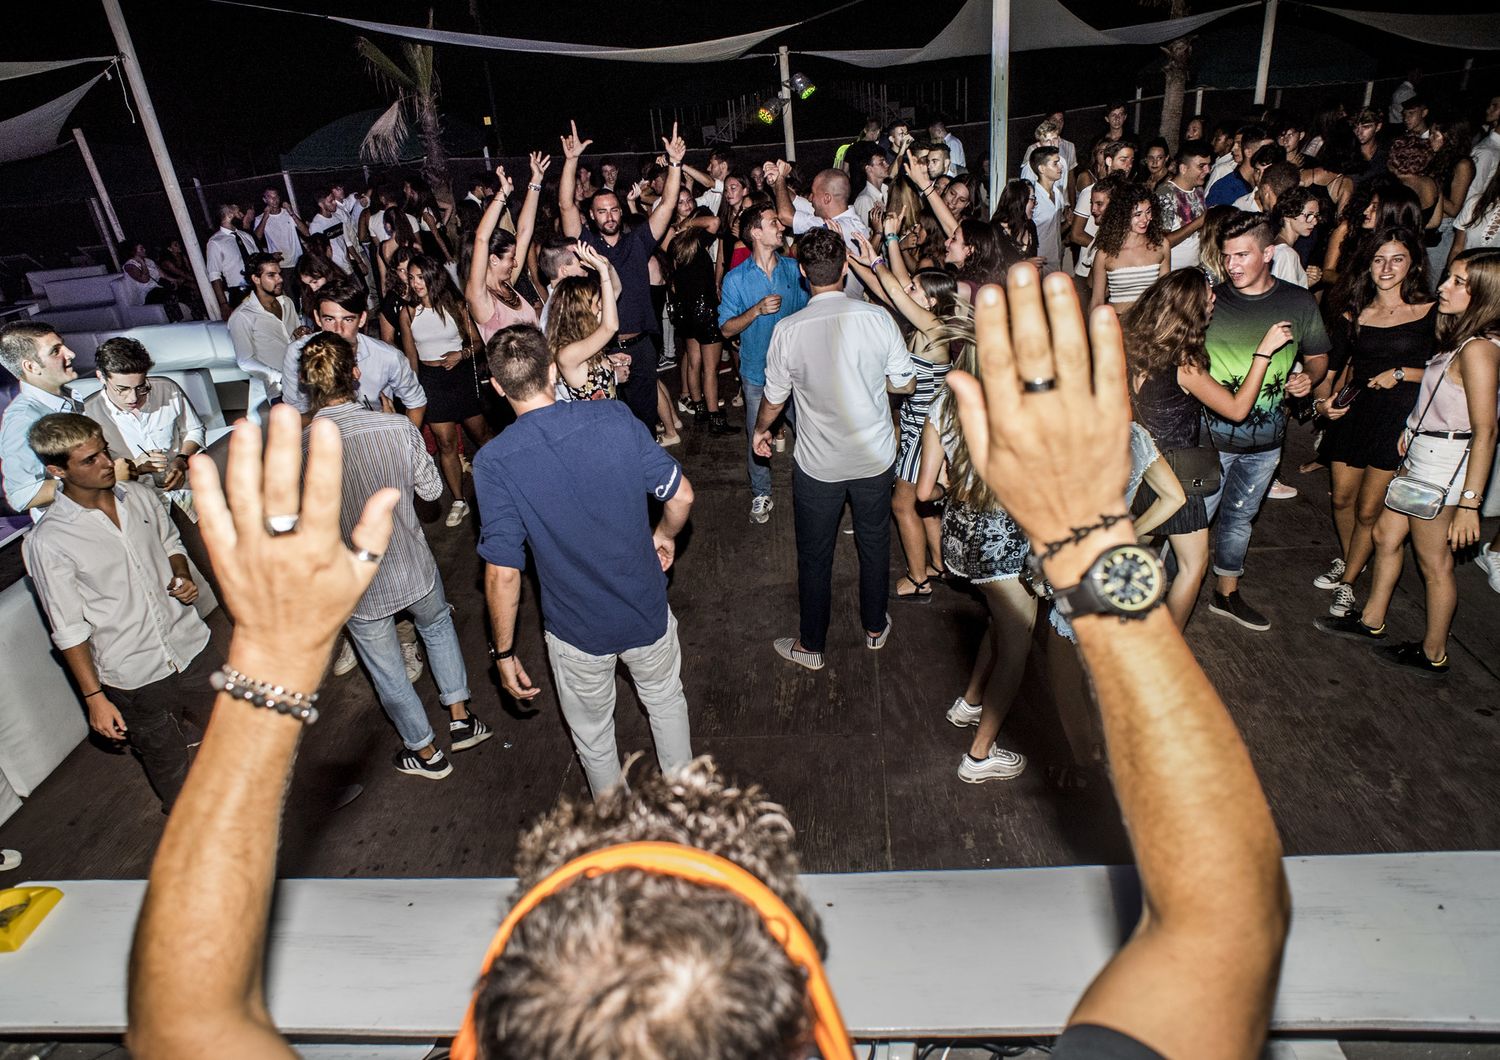 La discoteca La Bussola in Versilia nell'estate 2018